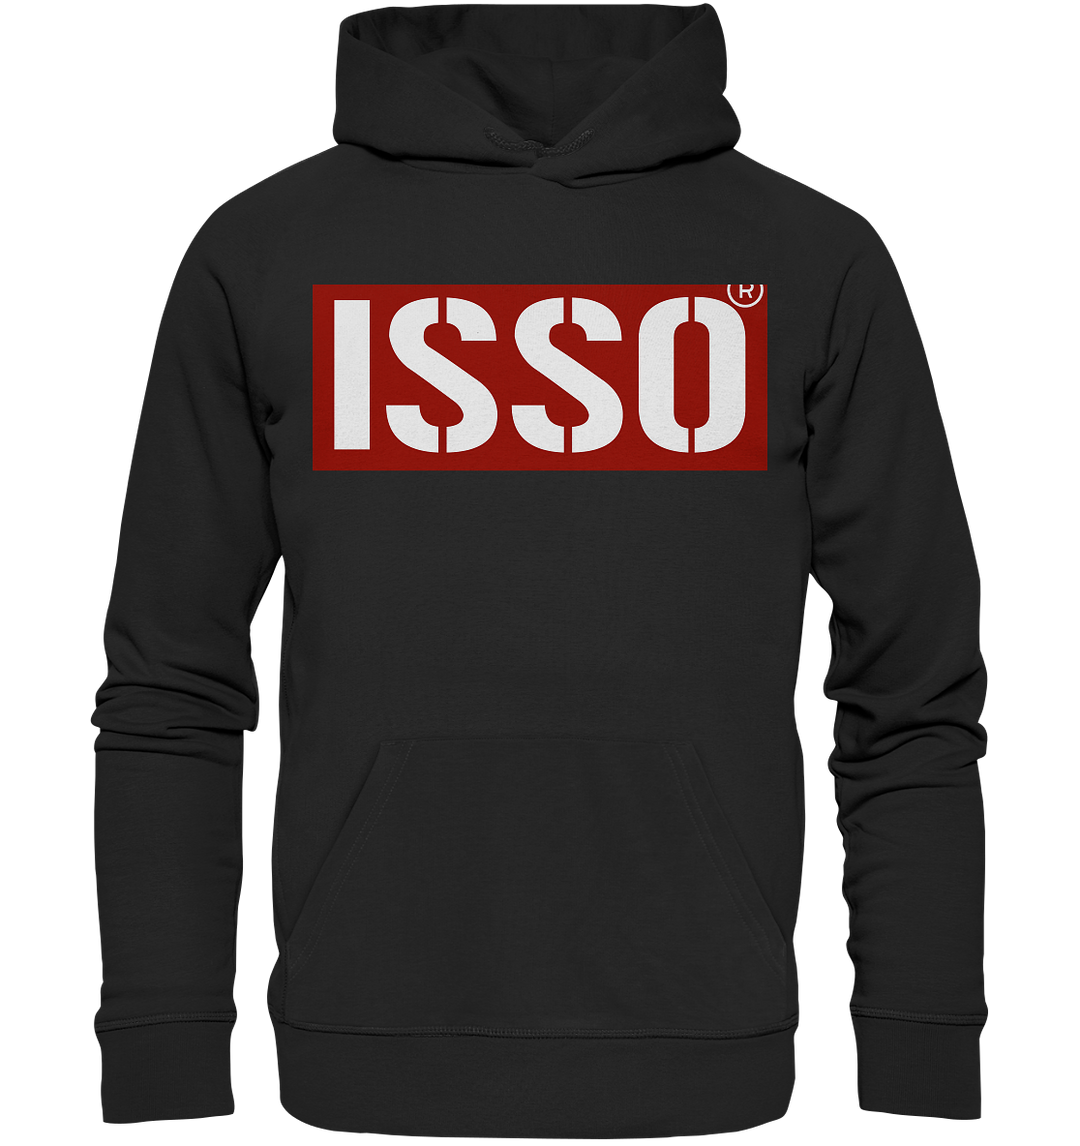 "ISSO" - Premium Unisex Hoodie